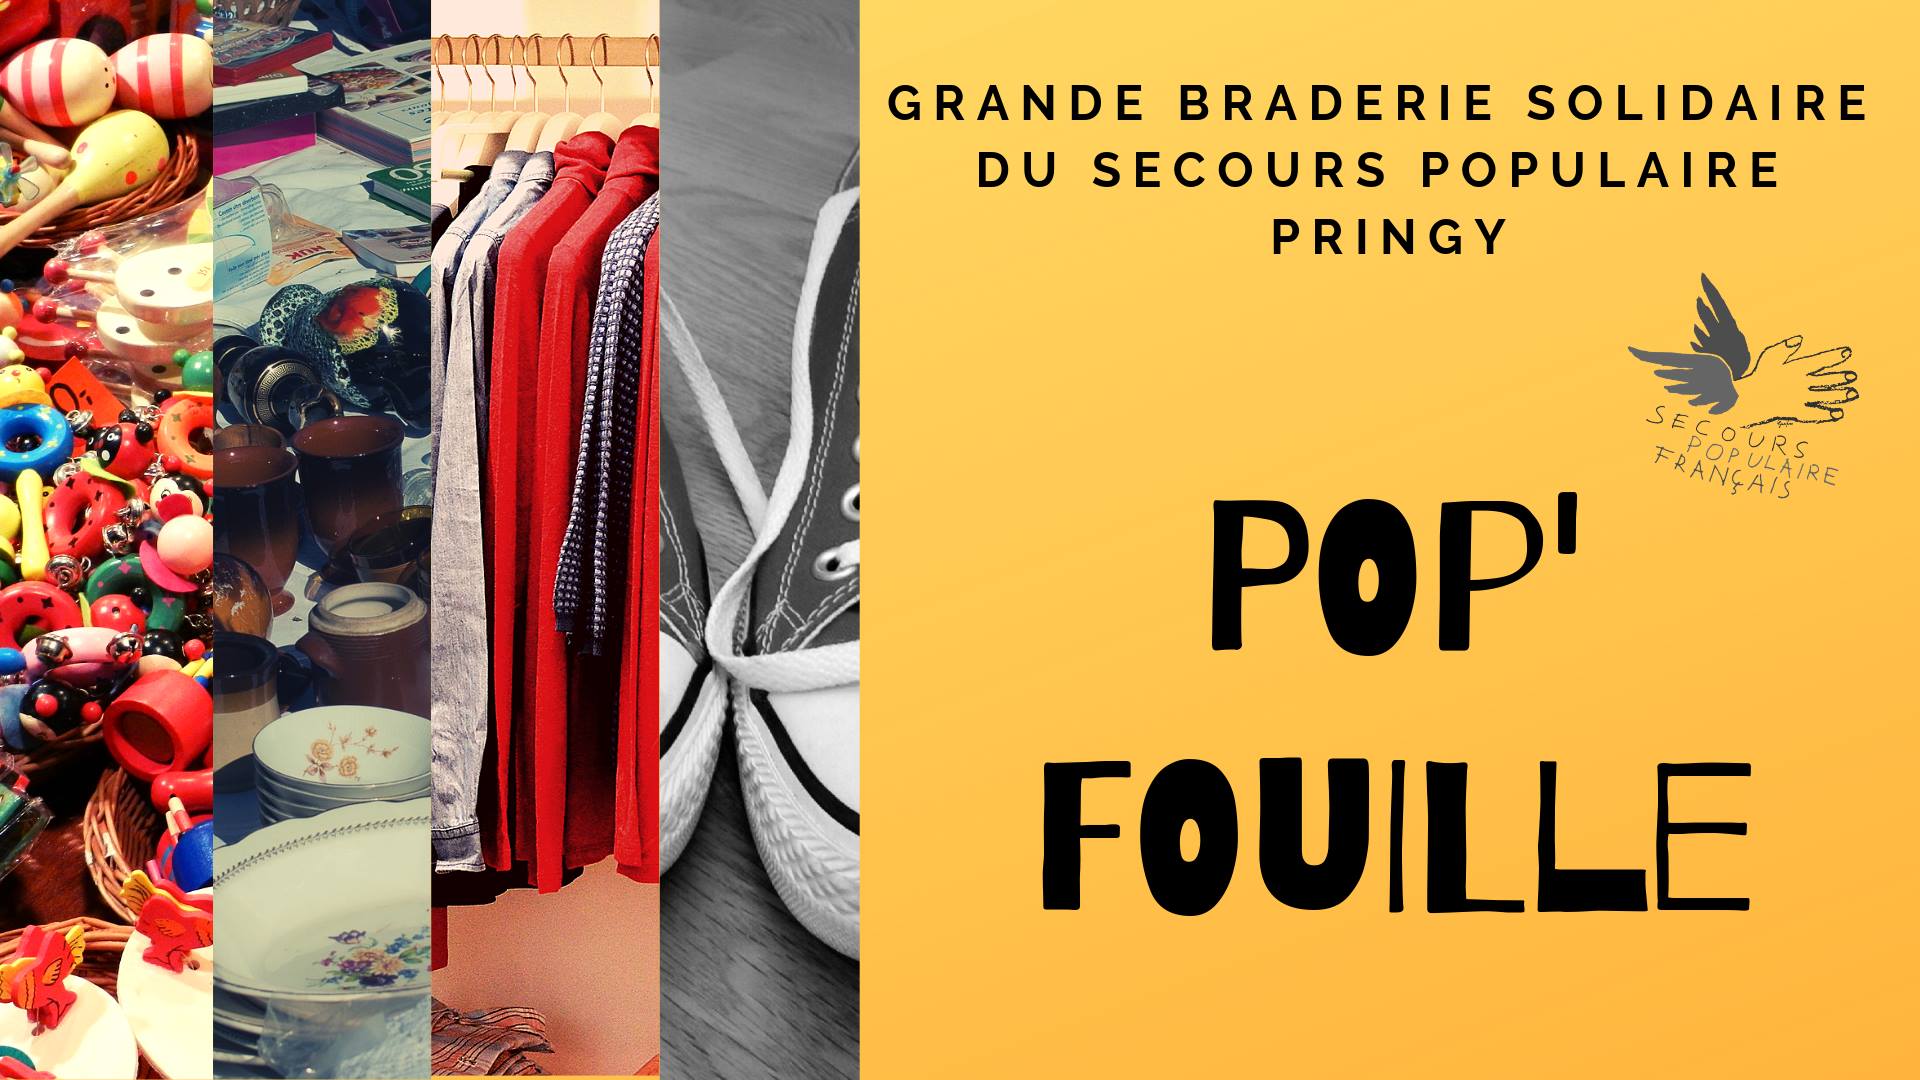 Pop’Fouille